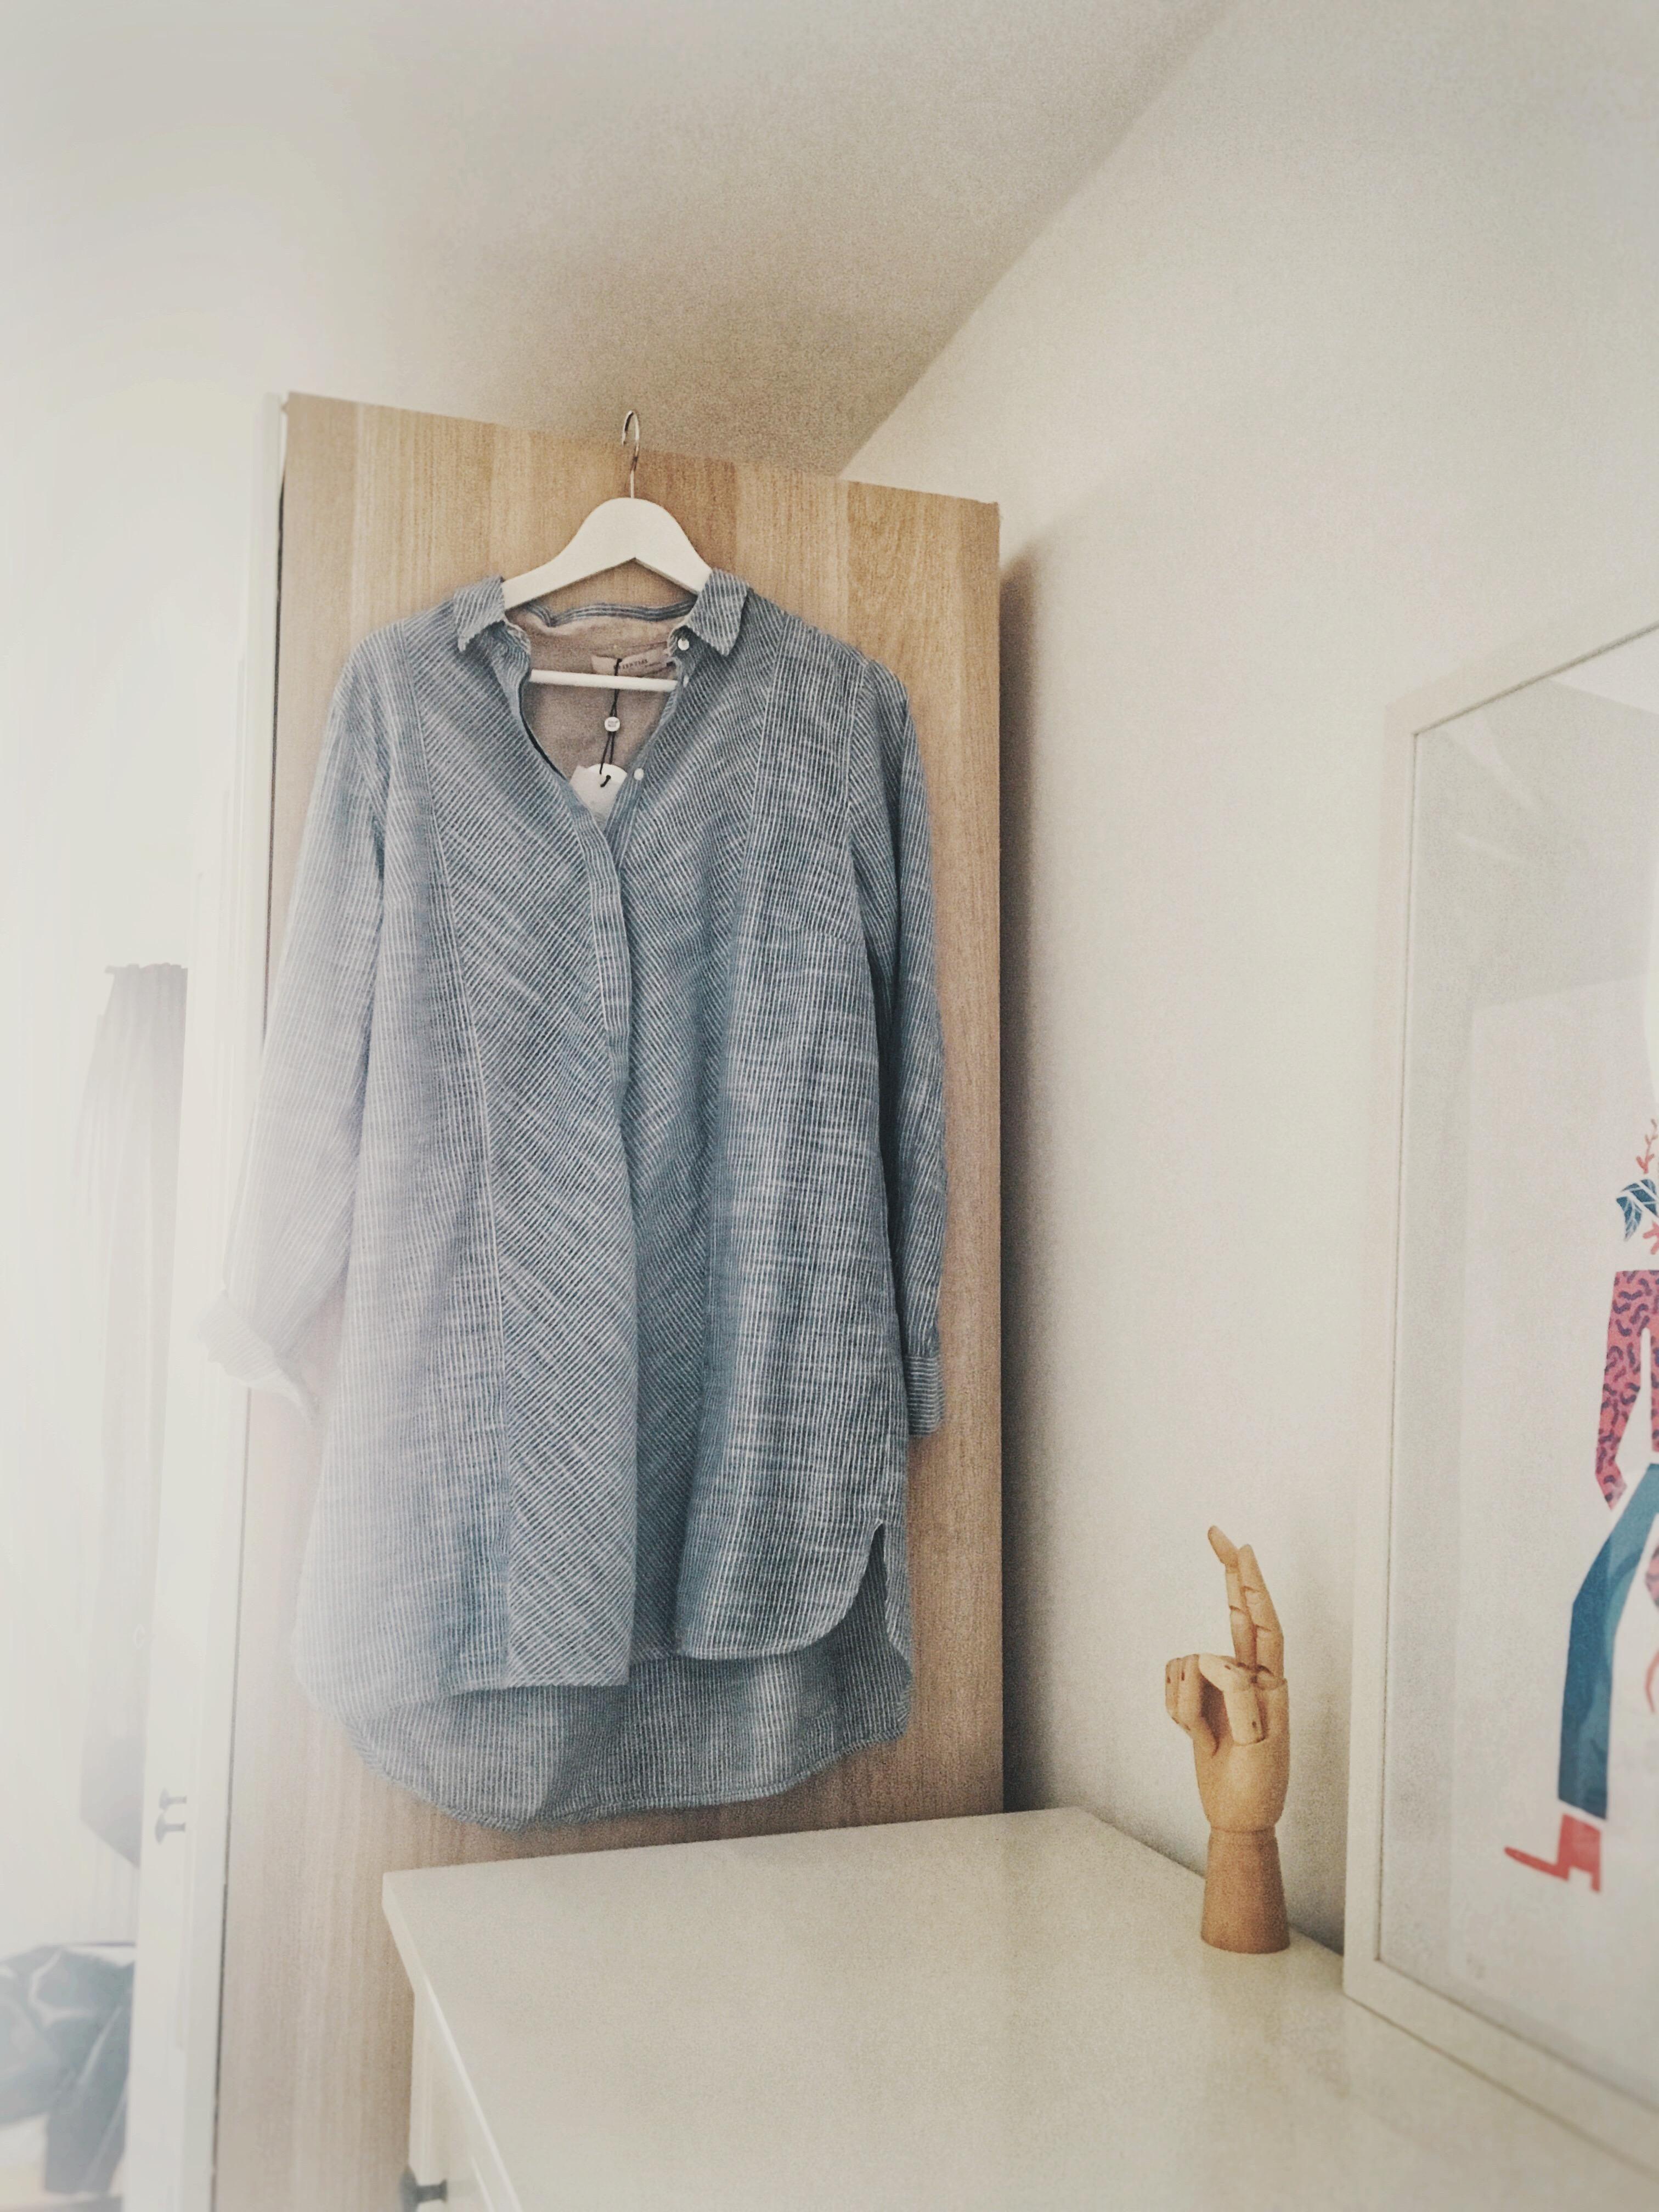 Am Schrank aufgehängt wird das Blusenkleid sofort zum Highlight #schlafzimmer 